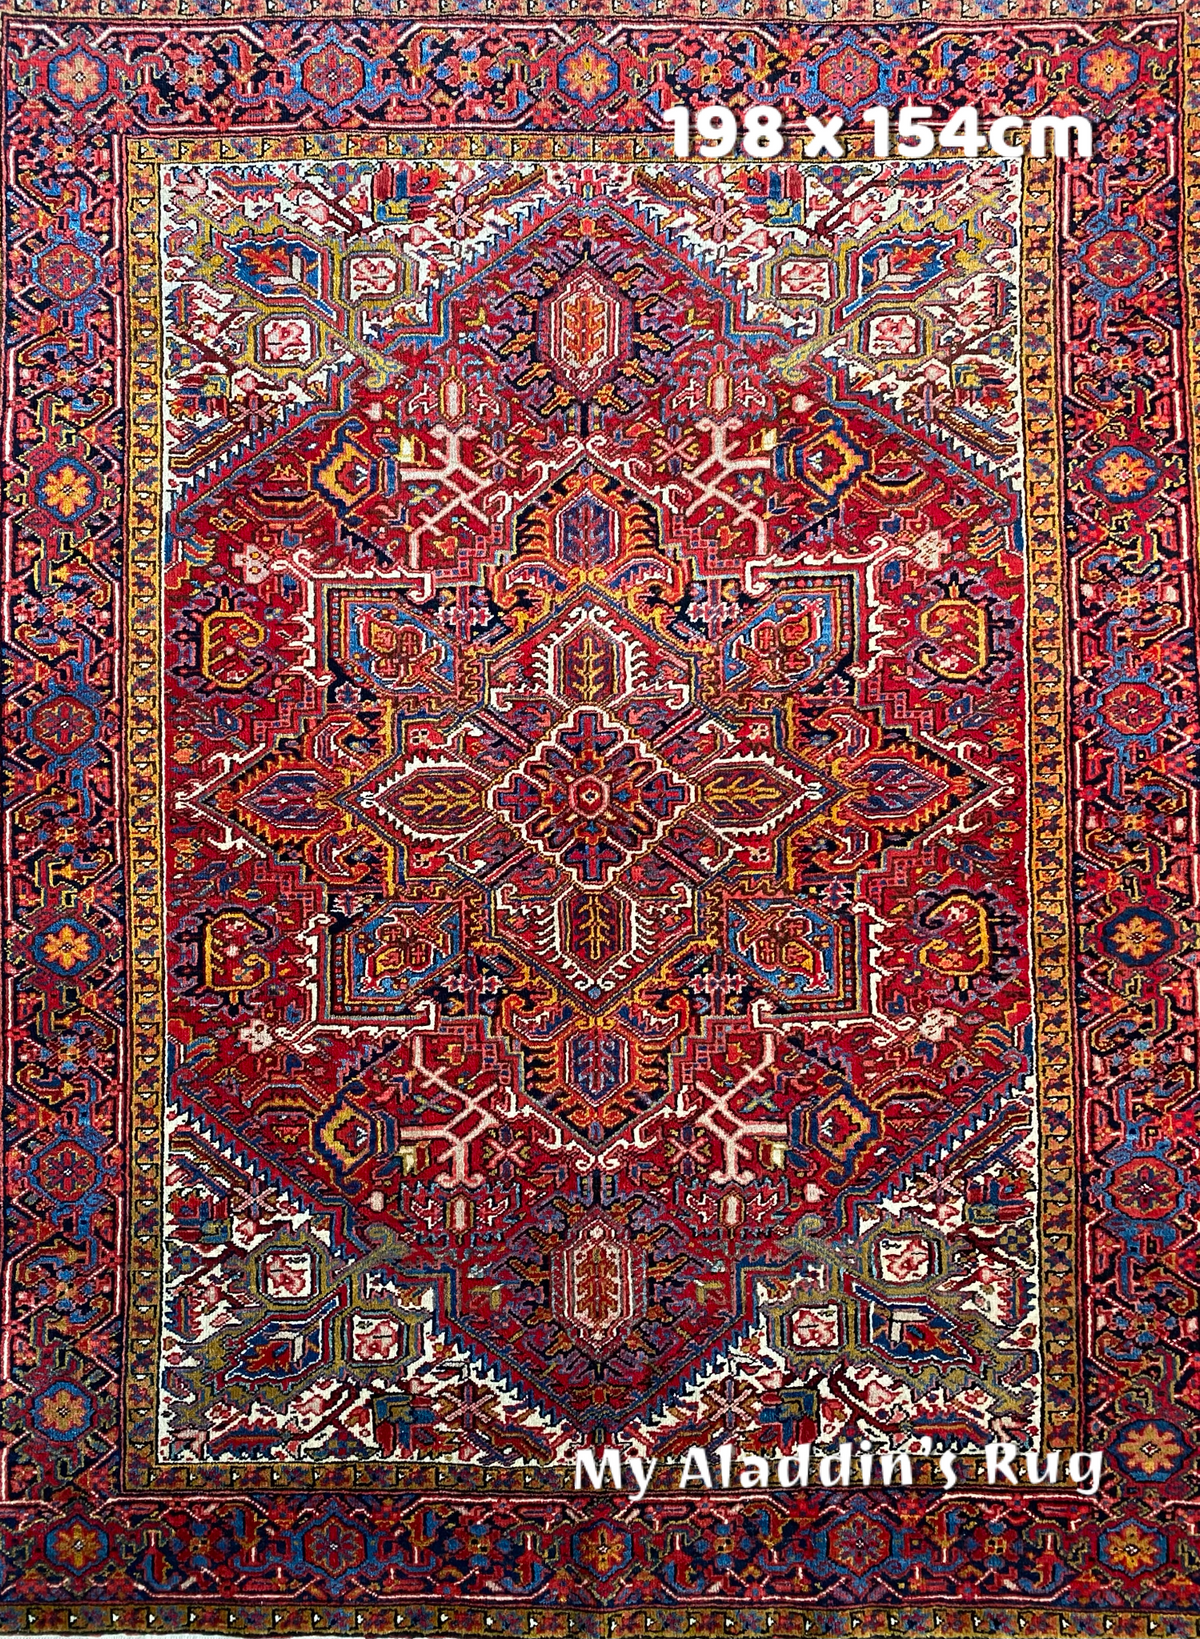 オールド ヘリーズ産 ペルシャ絨毯 198×154cm - ラグ